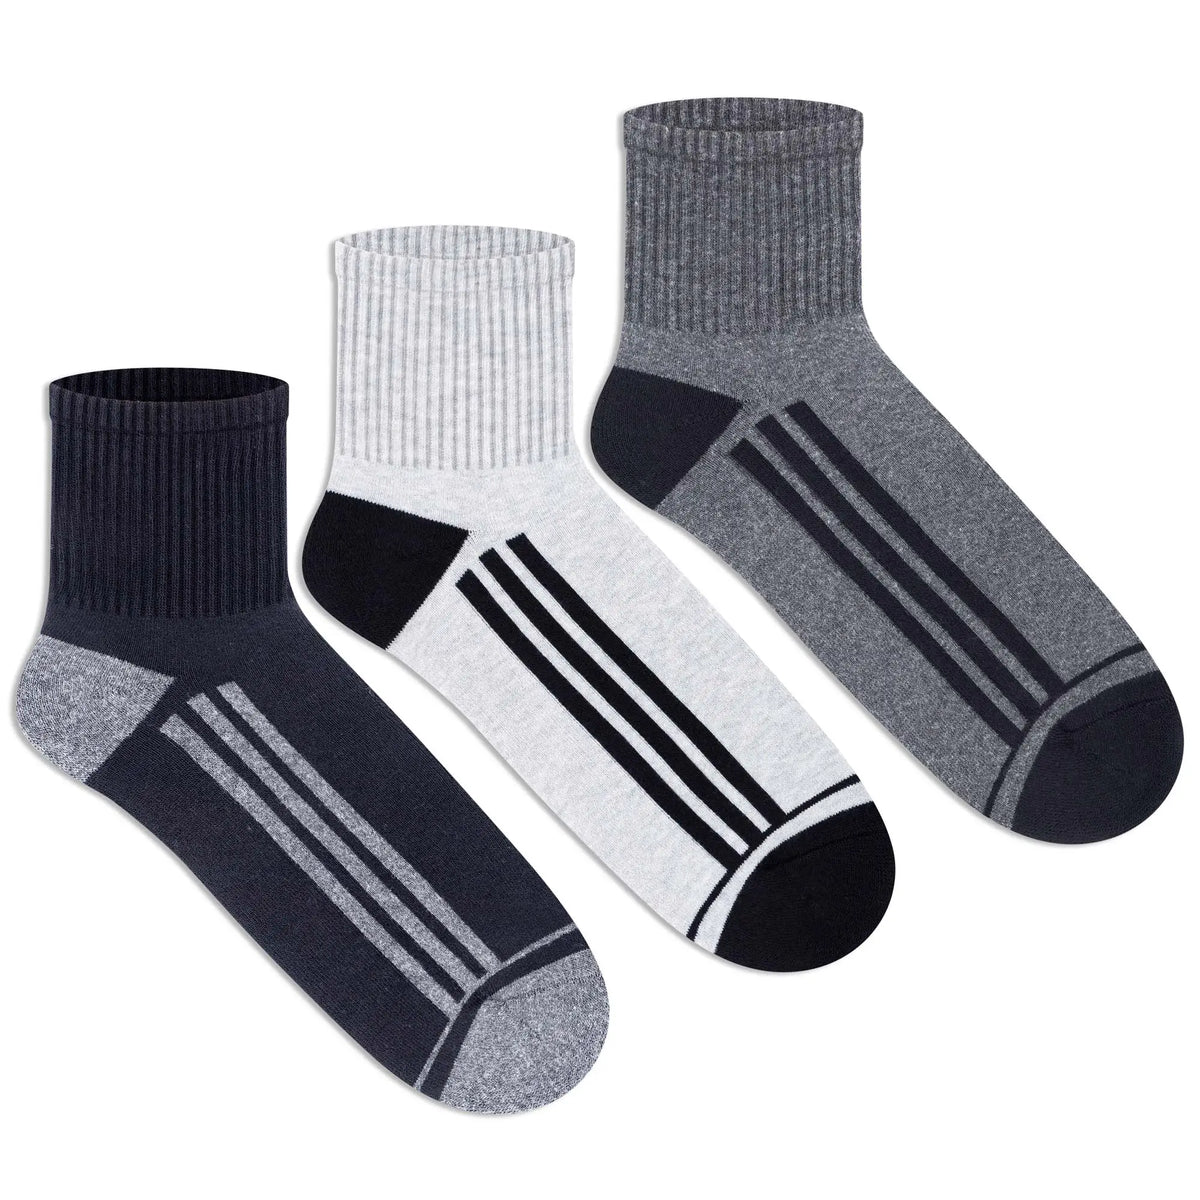 Sports Ankle Socks for Men (Pack of 3)